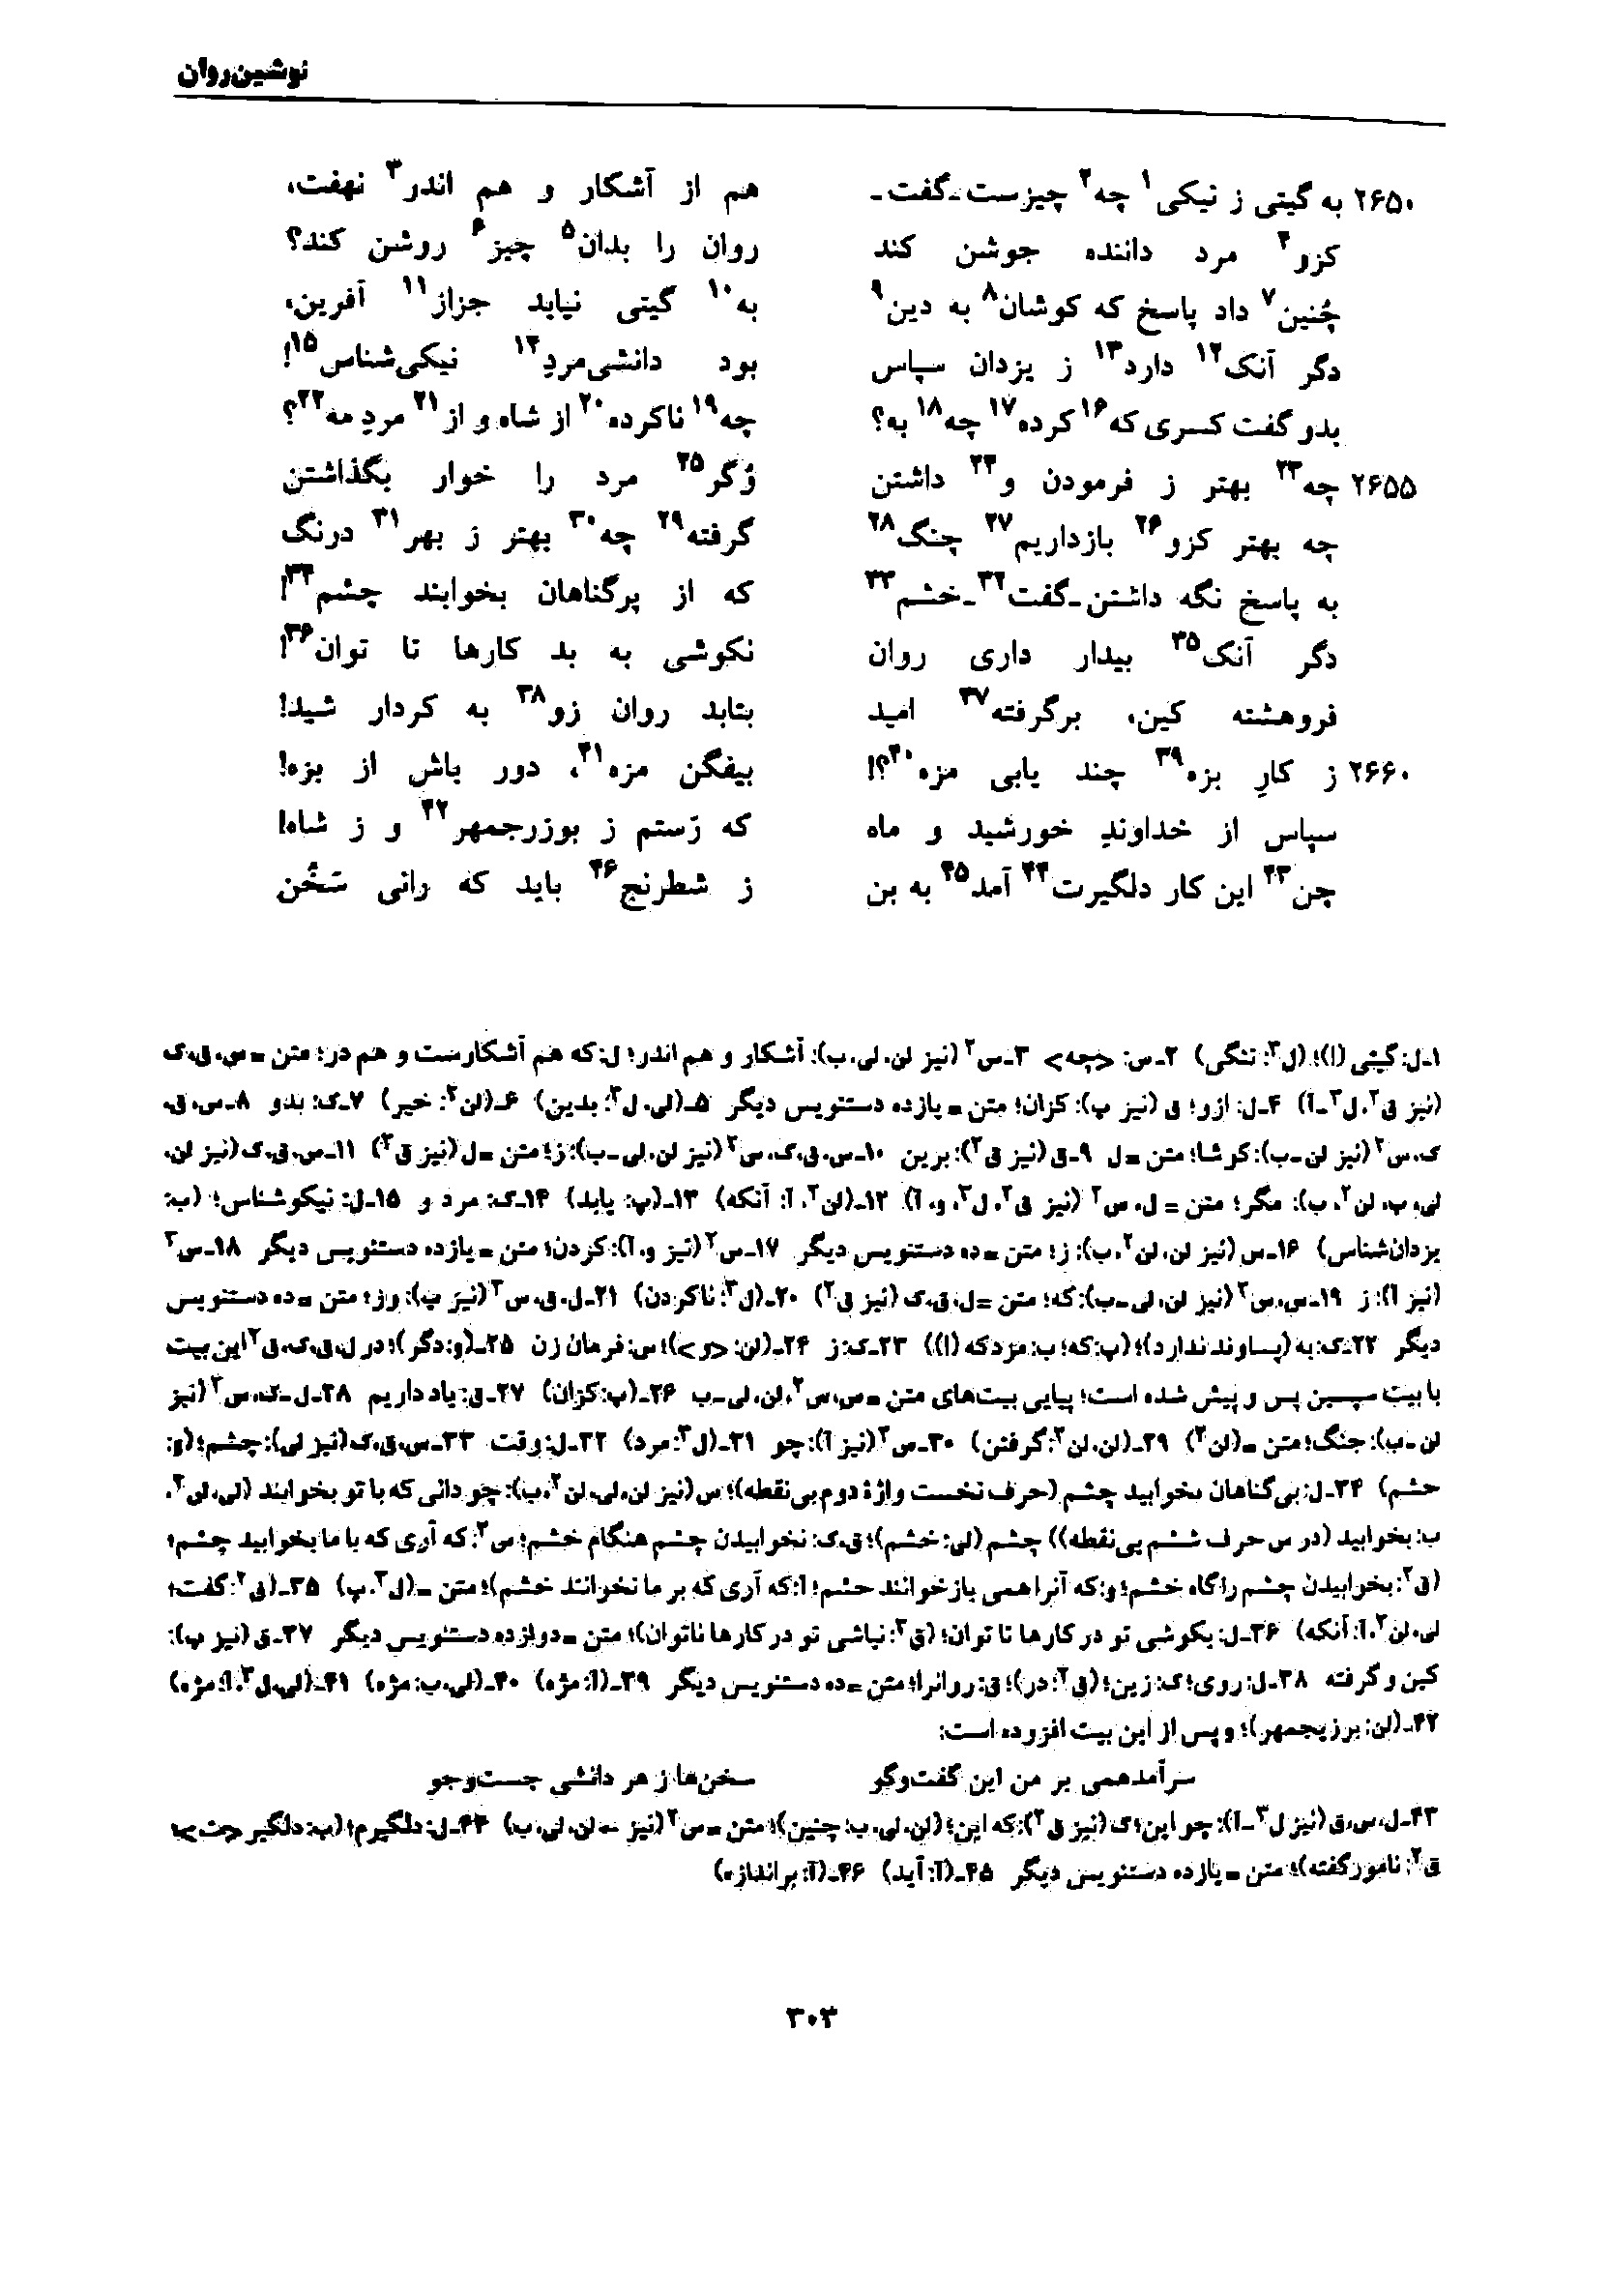 vol. 7, p. 303